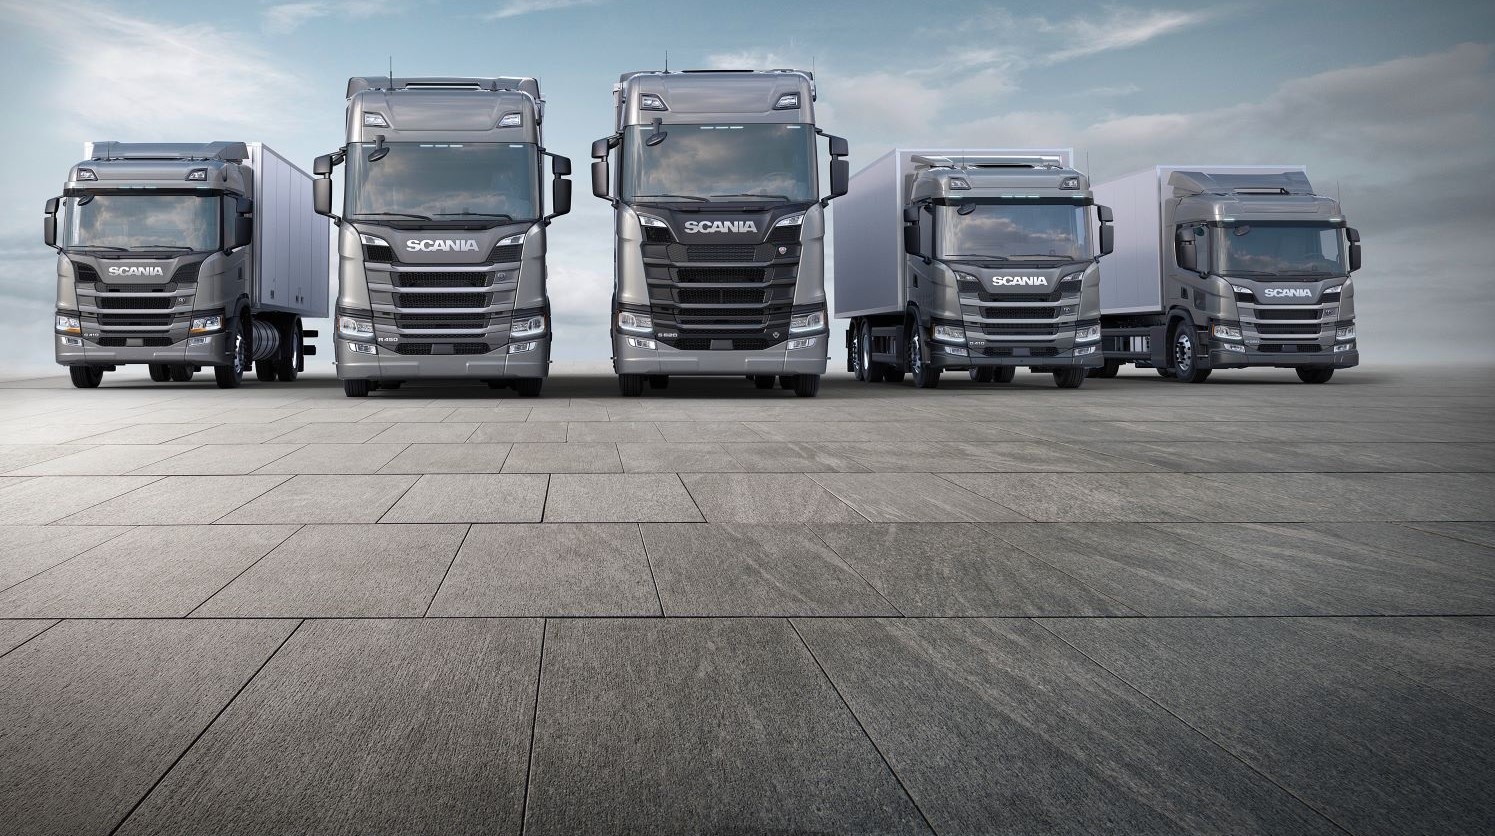 Scania Nova Geração de caminhões: 2 anos de sucesso